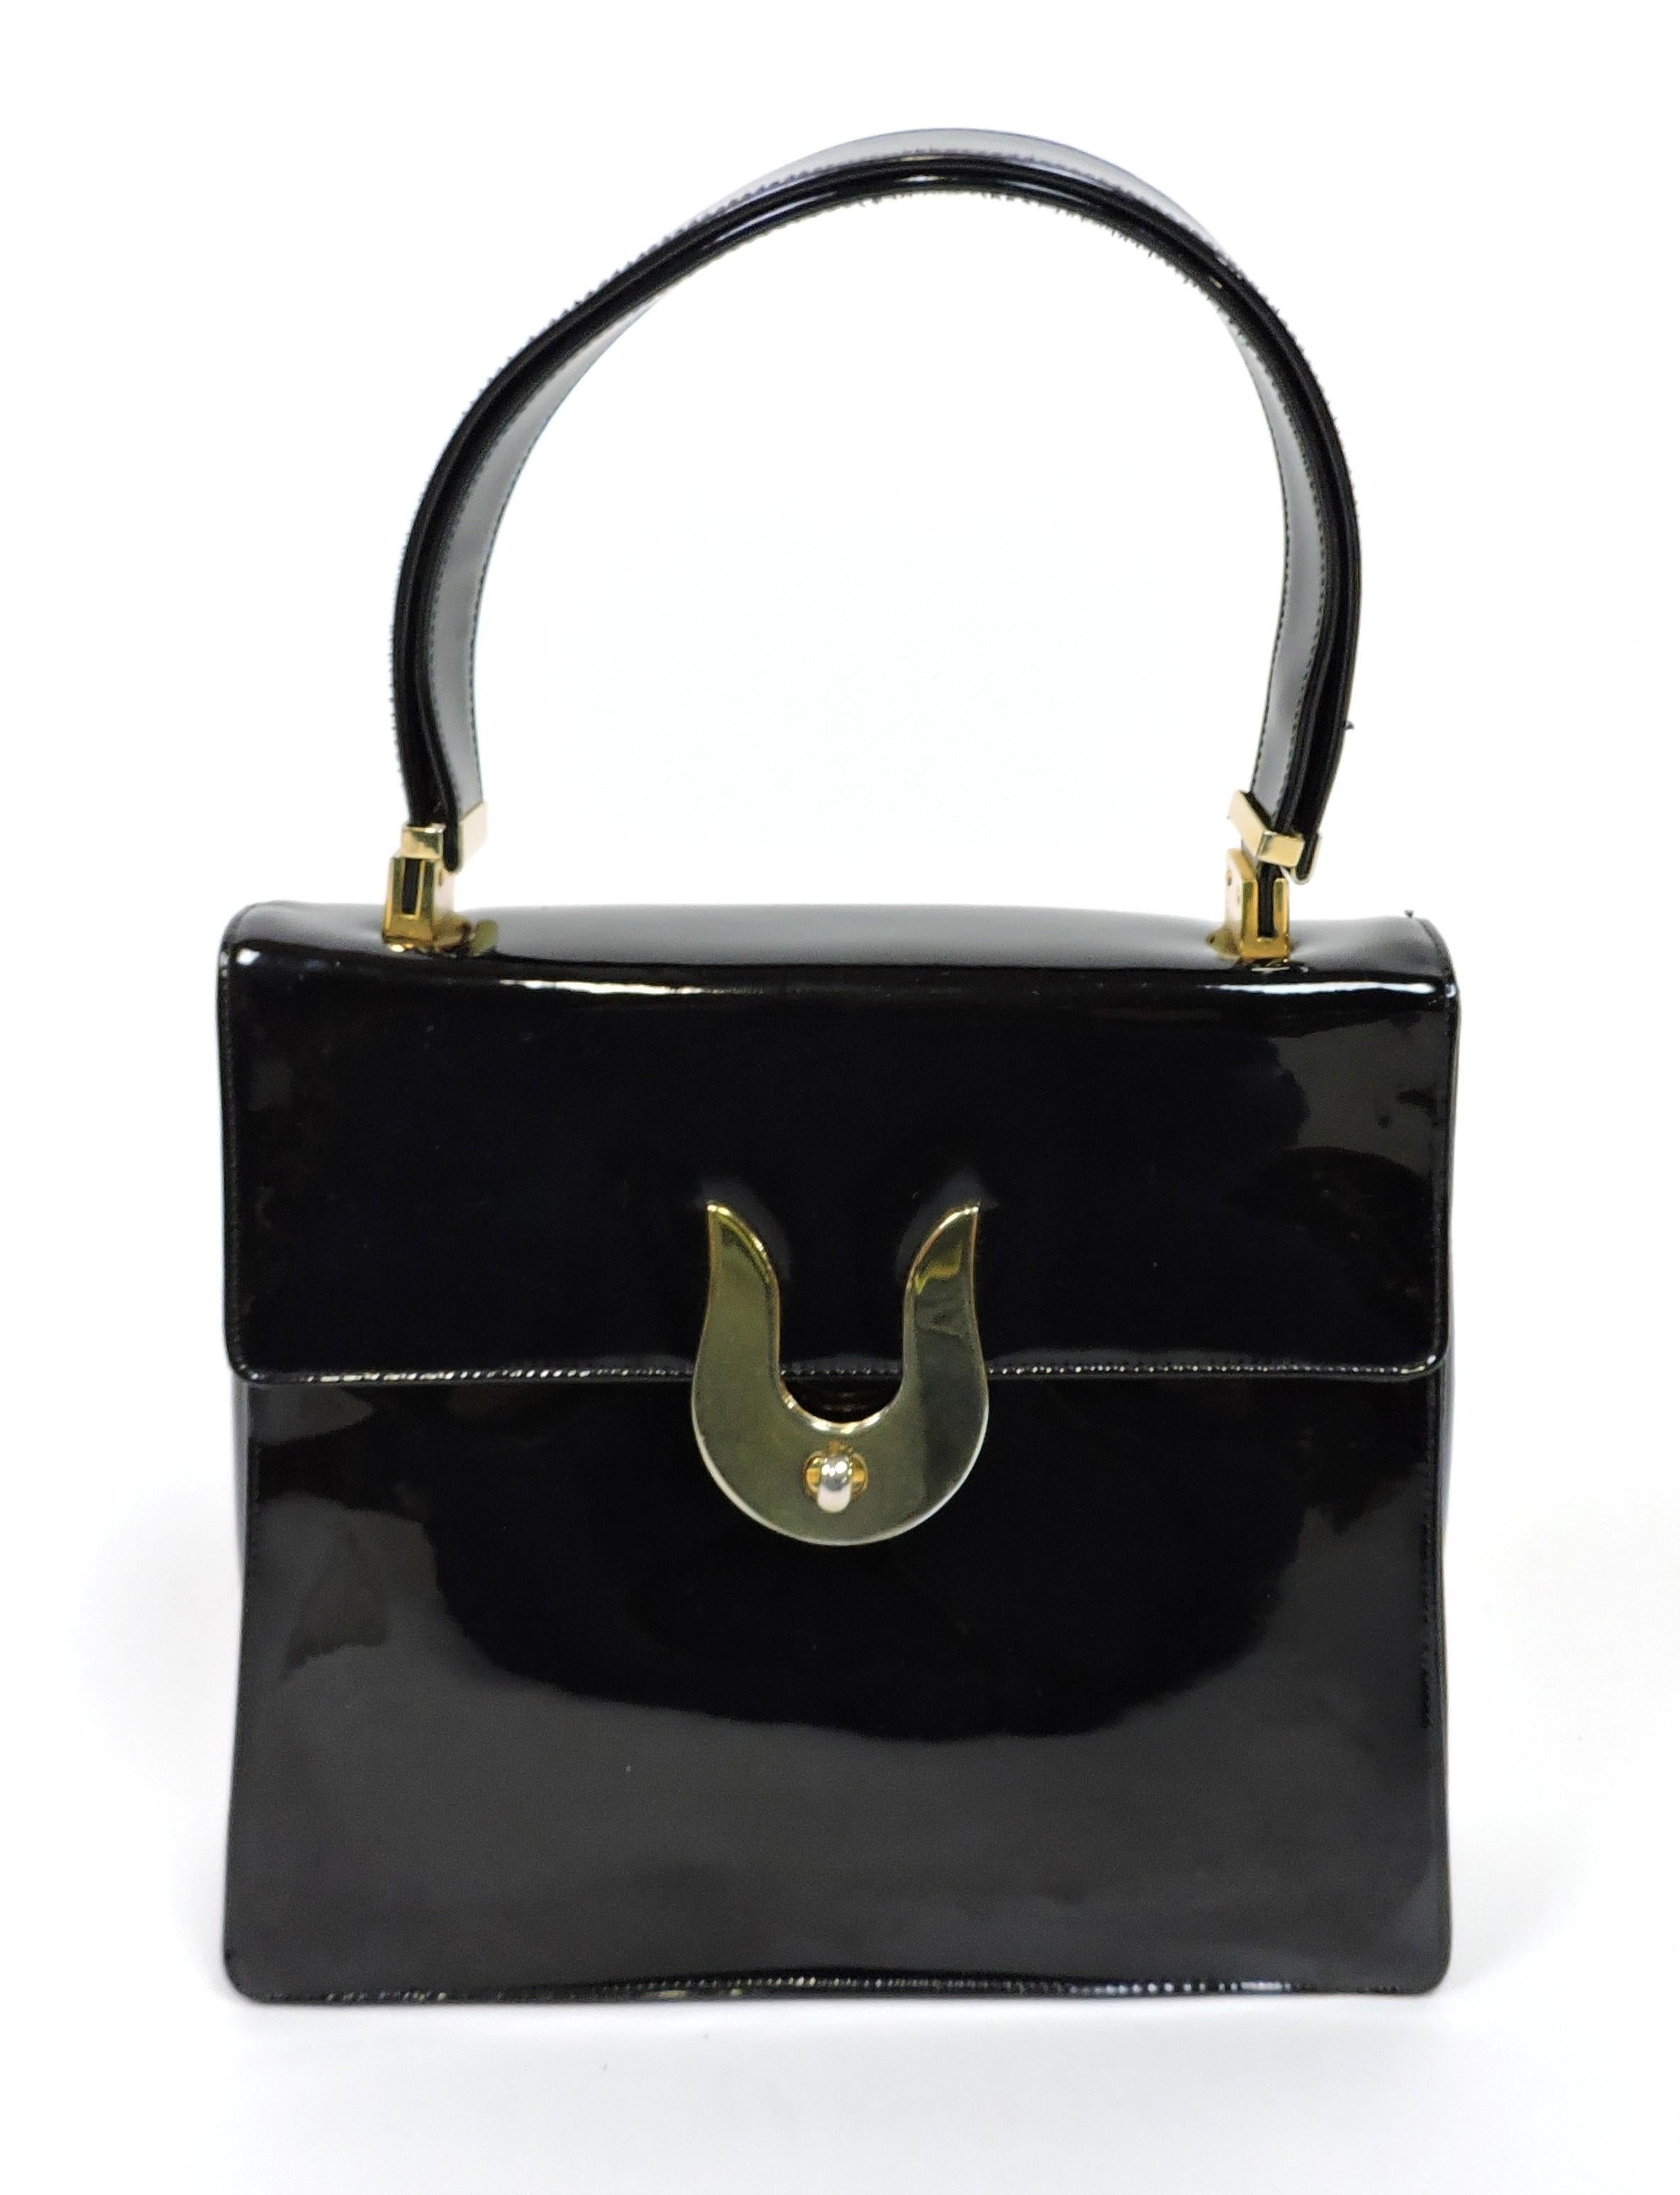 Koret Mid-Century Modern Black Patent Leather and Brass Handbag or Shoulder Bag For Sale 5